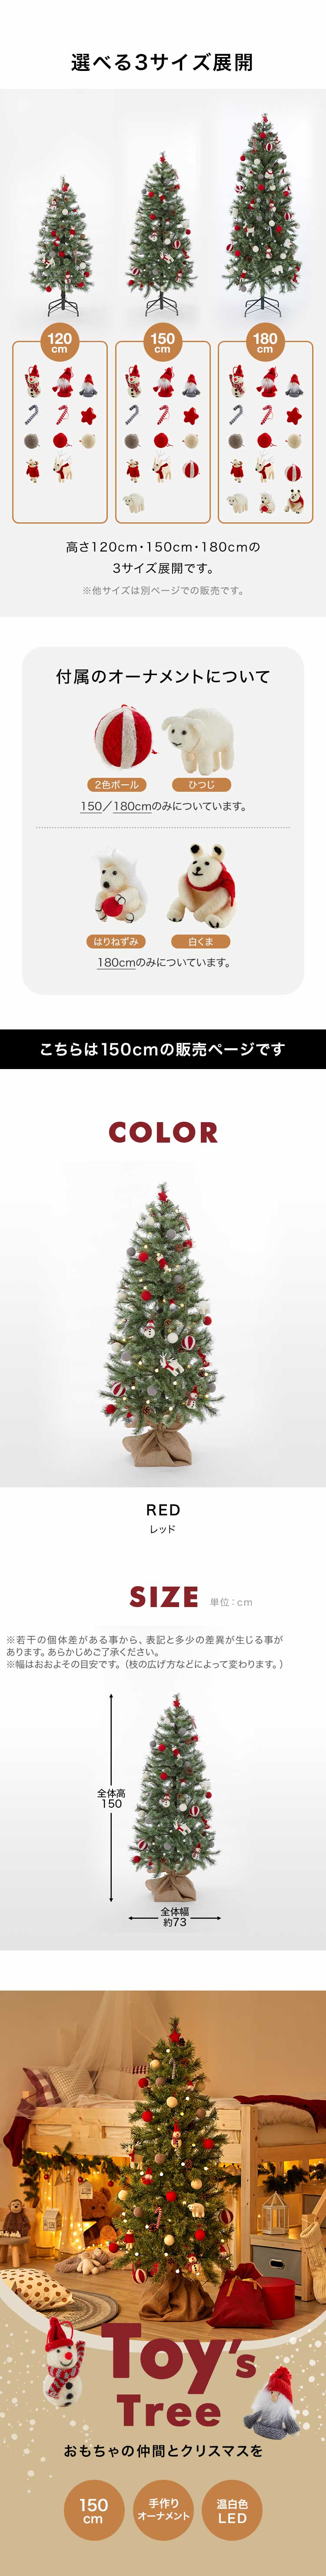 クリスマスツリー おしゃれ 150cm クリスマスツリーセット オーナメントセット 収納箱 かわいい ライト コンパクト ハンドメイド 電飾付き led  ロウヤ LOWYA fg02-g1018-1m0 LOWYA(ロウヤ)店 通販 